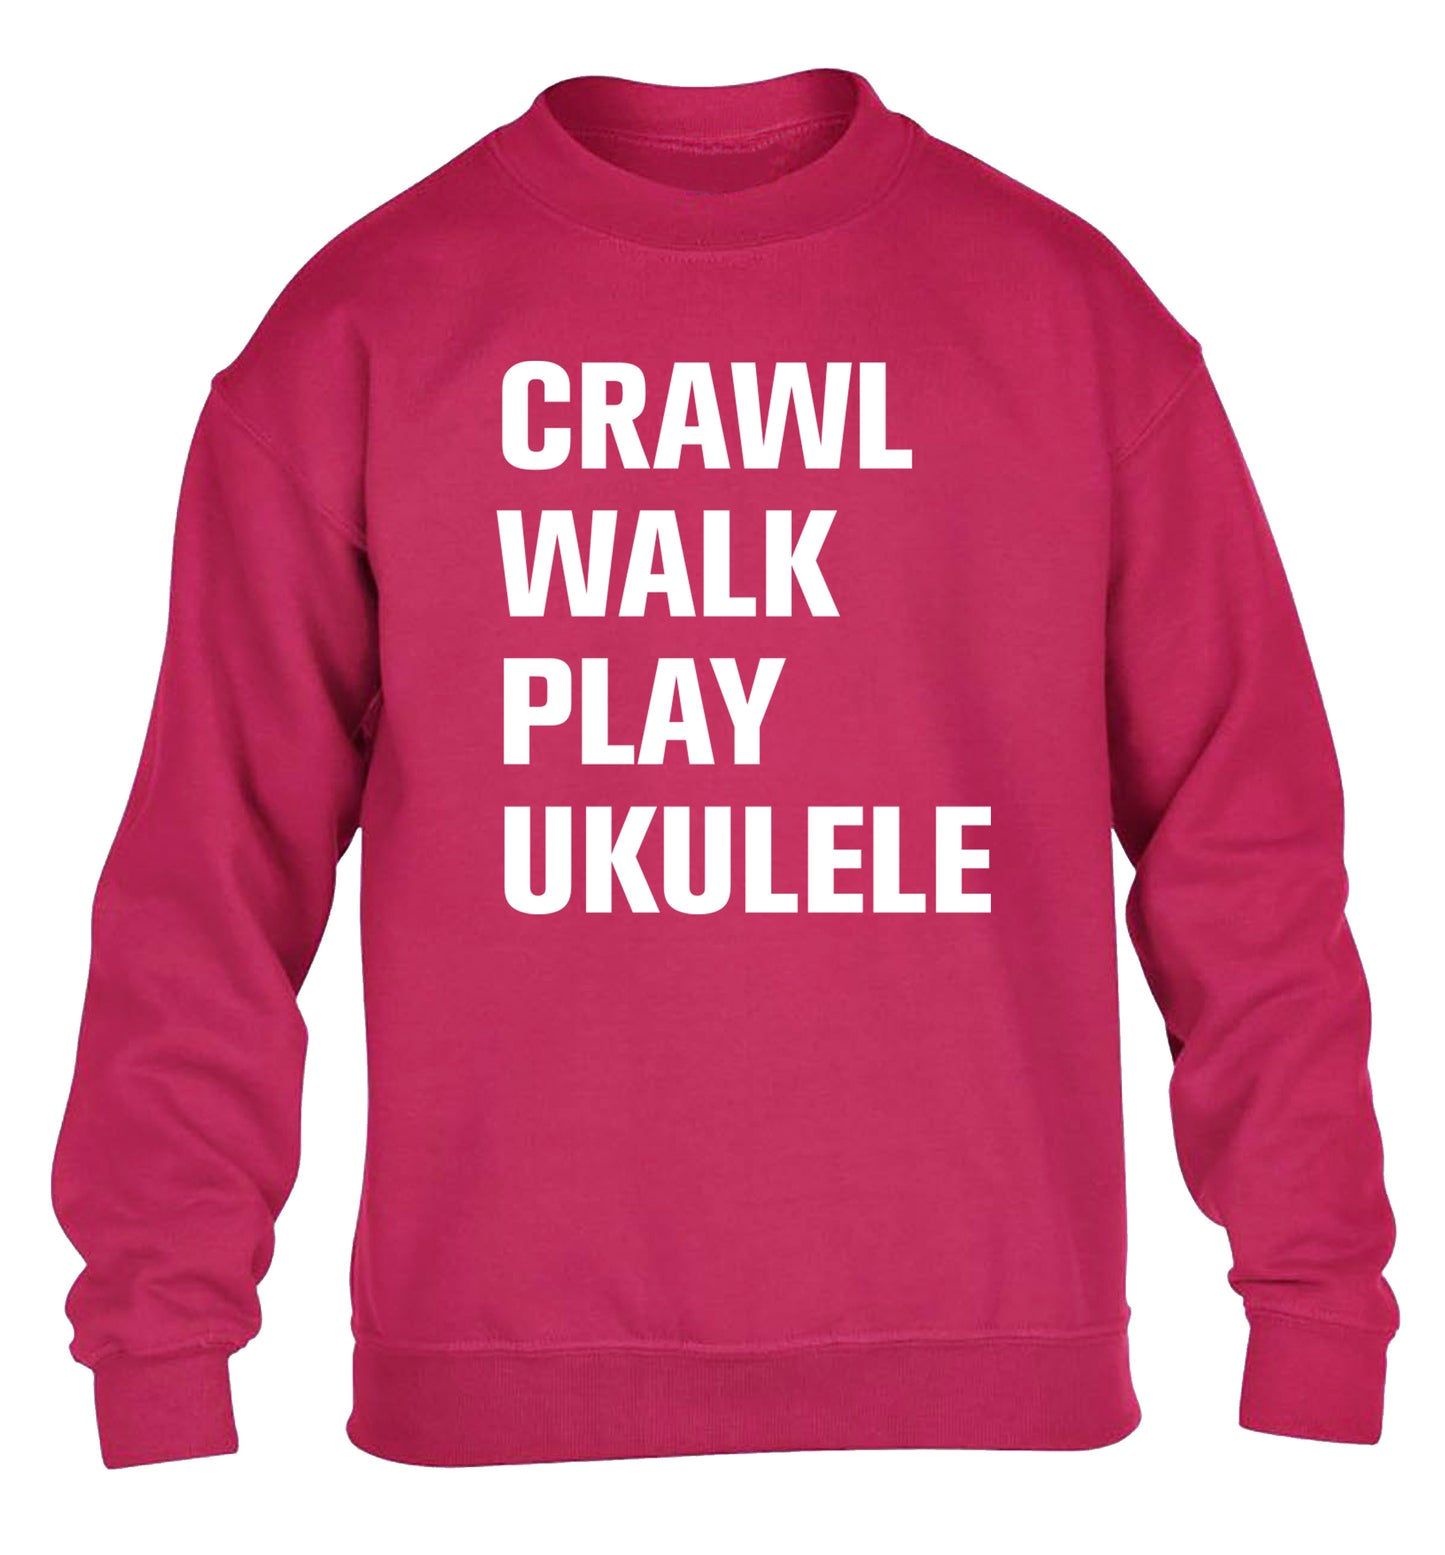 Crawl walk play ukulele children's pink sweater 12-13 Years